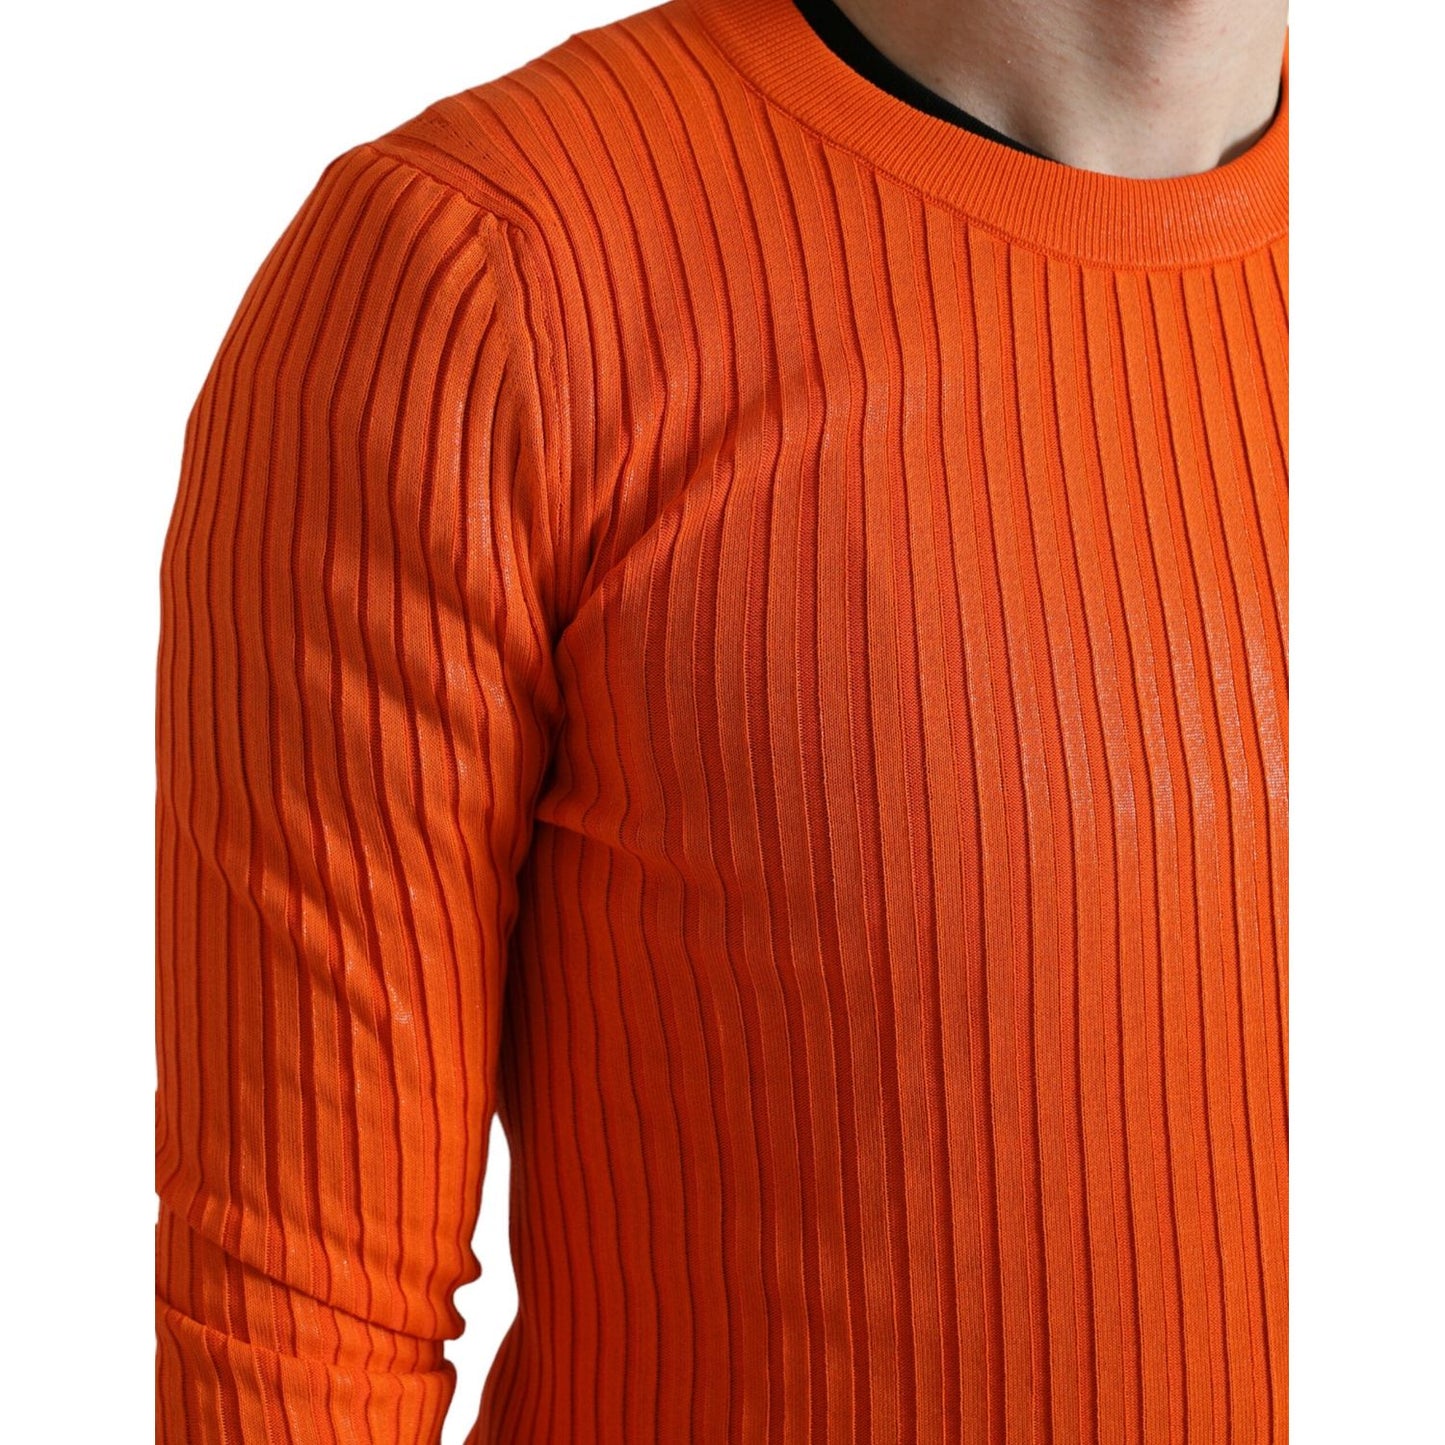 Dolce & GabbanaSleek Sunset Orange Knitted Pullover SweaterMcRichard Designer Brands£779.00